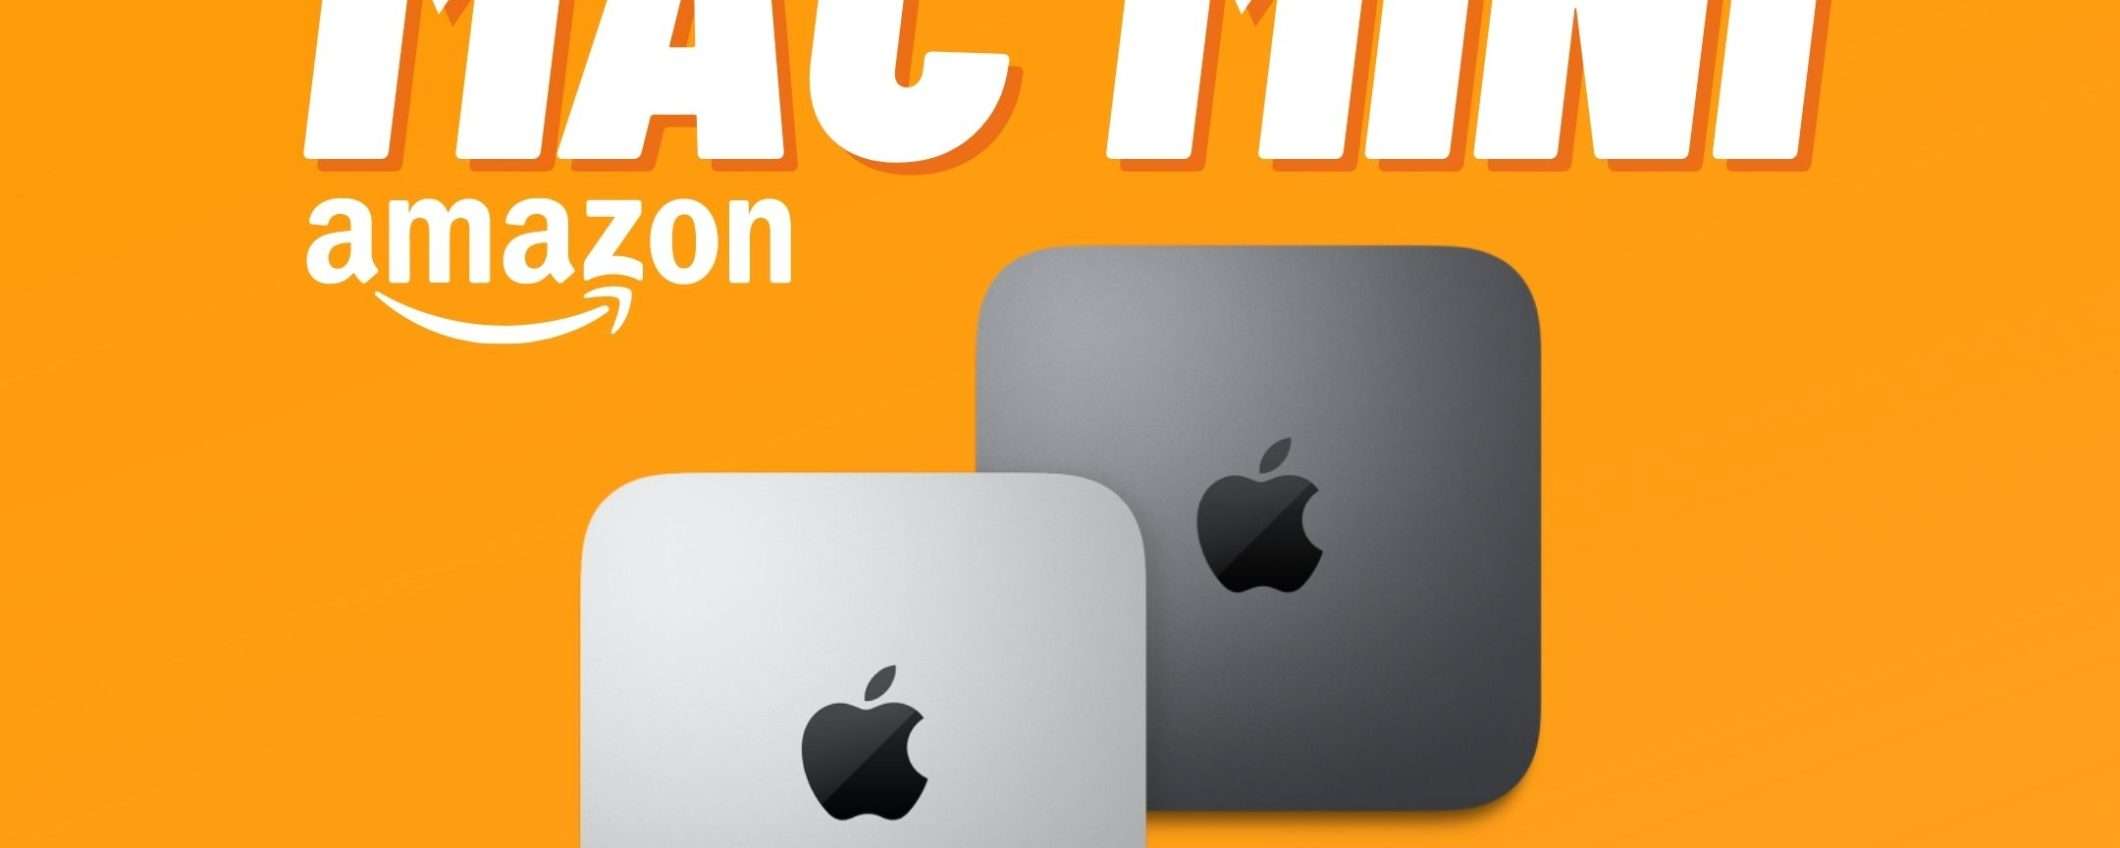 Mac mini M1 a soli 599€ grazie alle offerte di primavera di Amazon